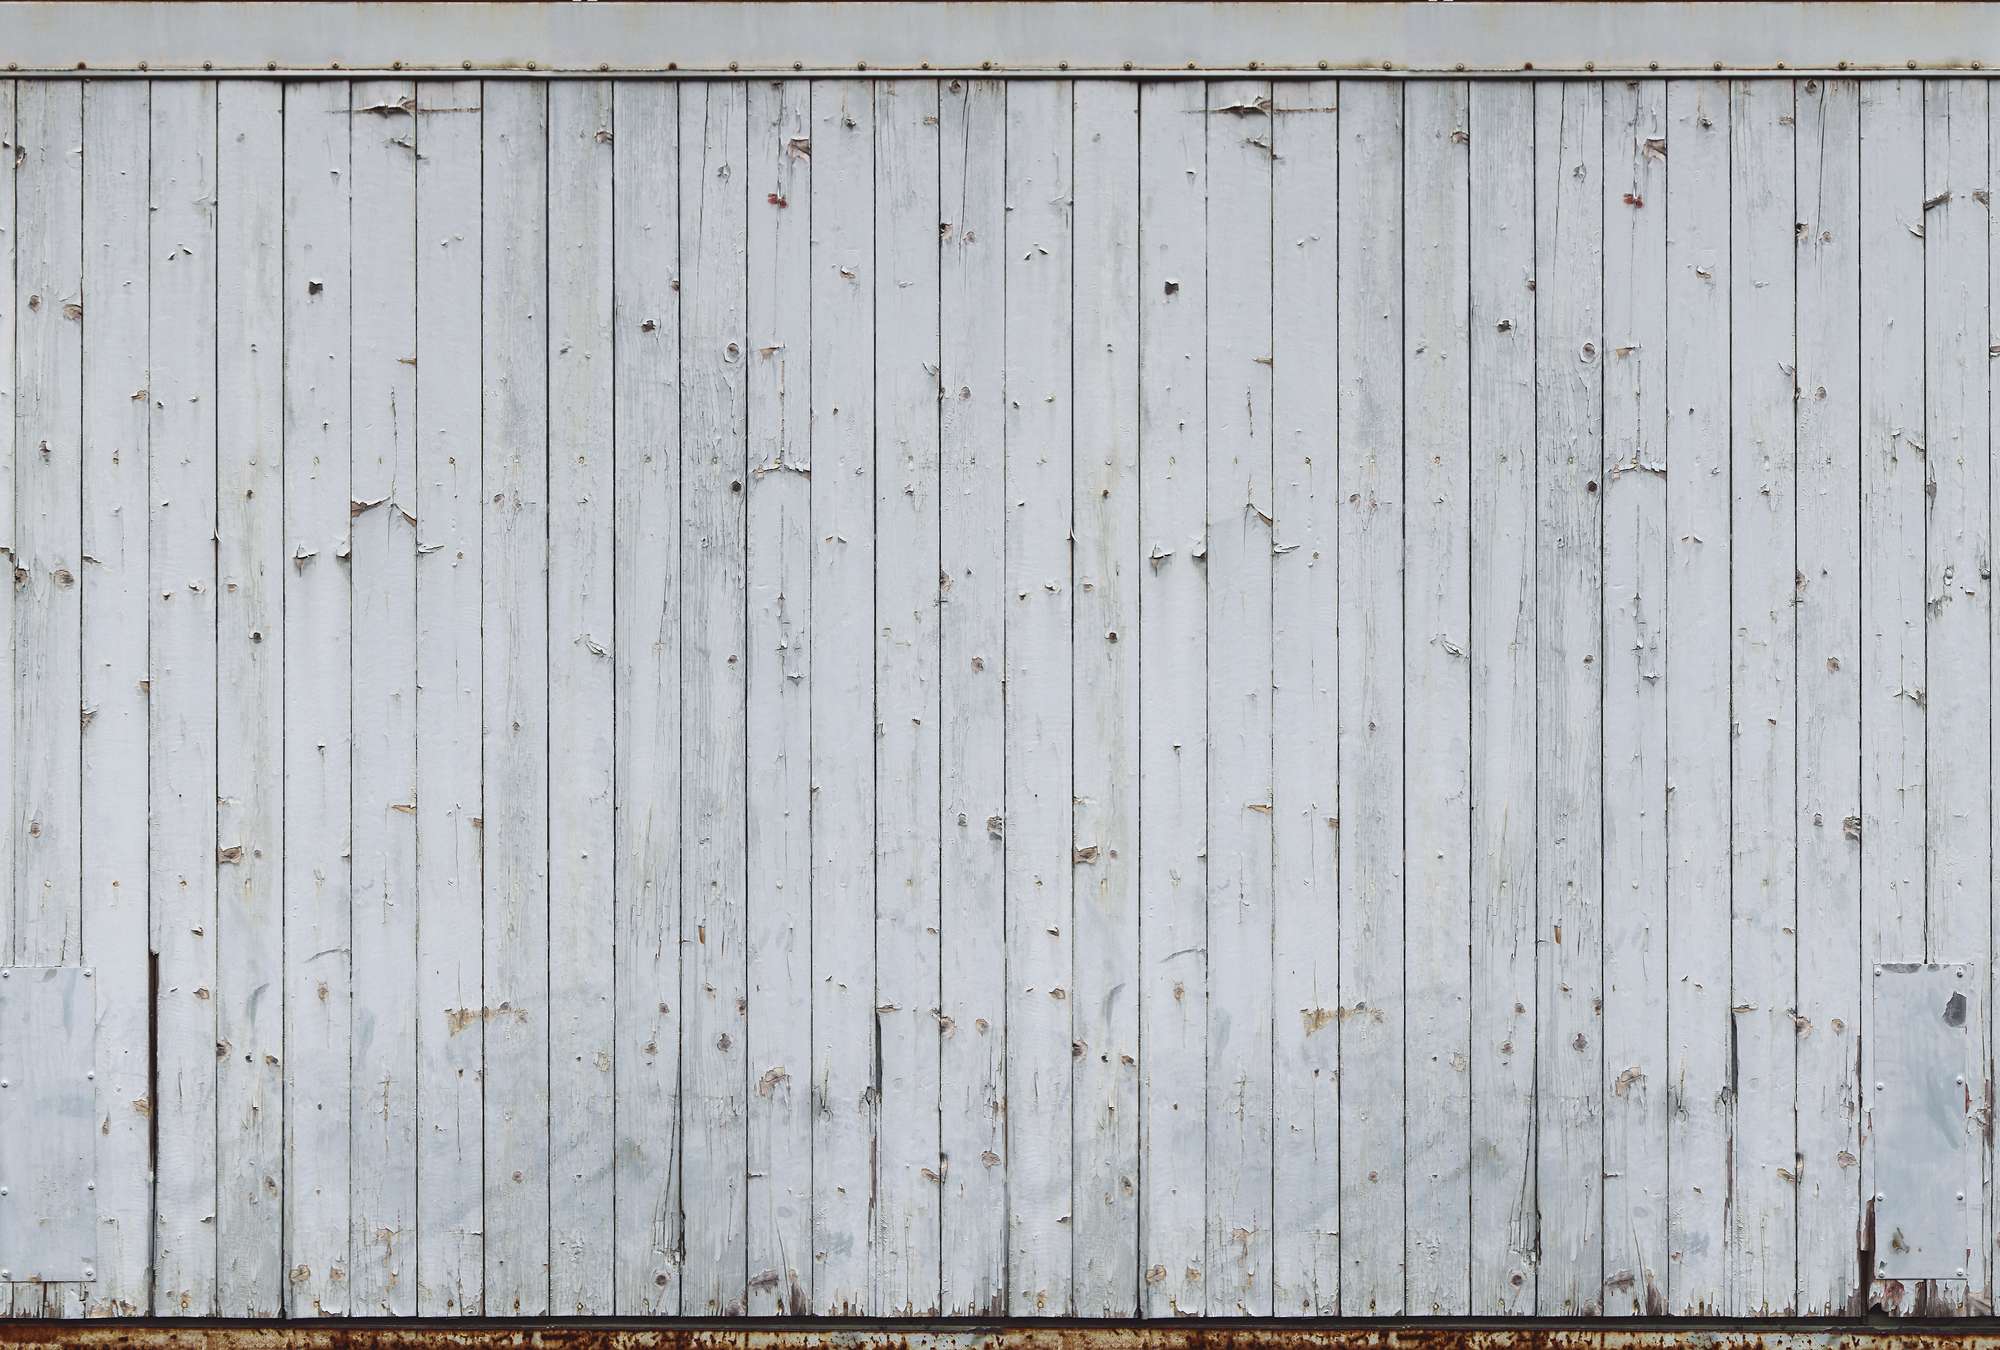             Bois clair - Shabby Chic mur de planches rustique
        